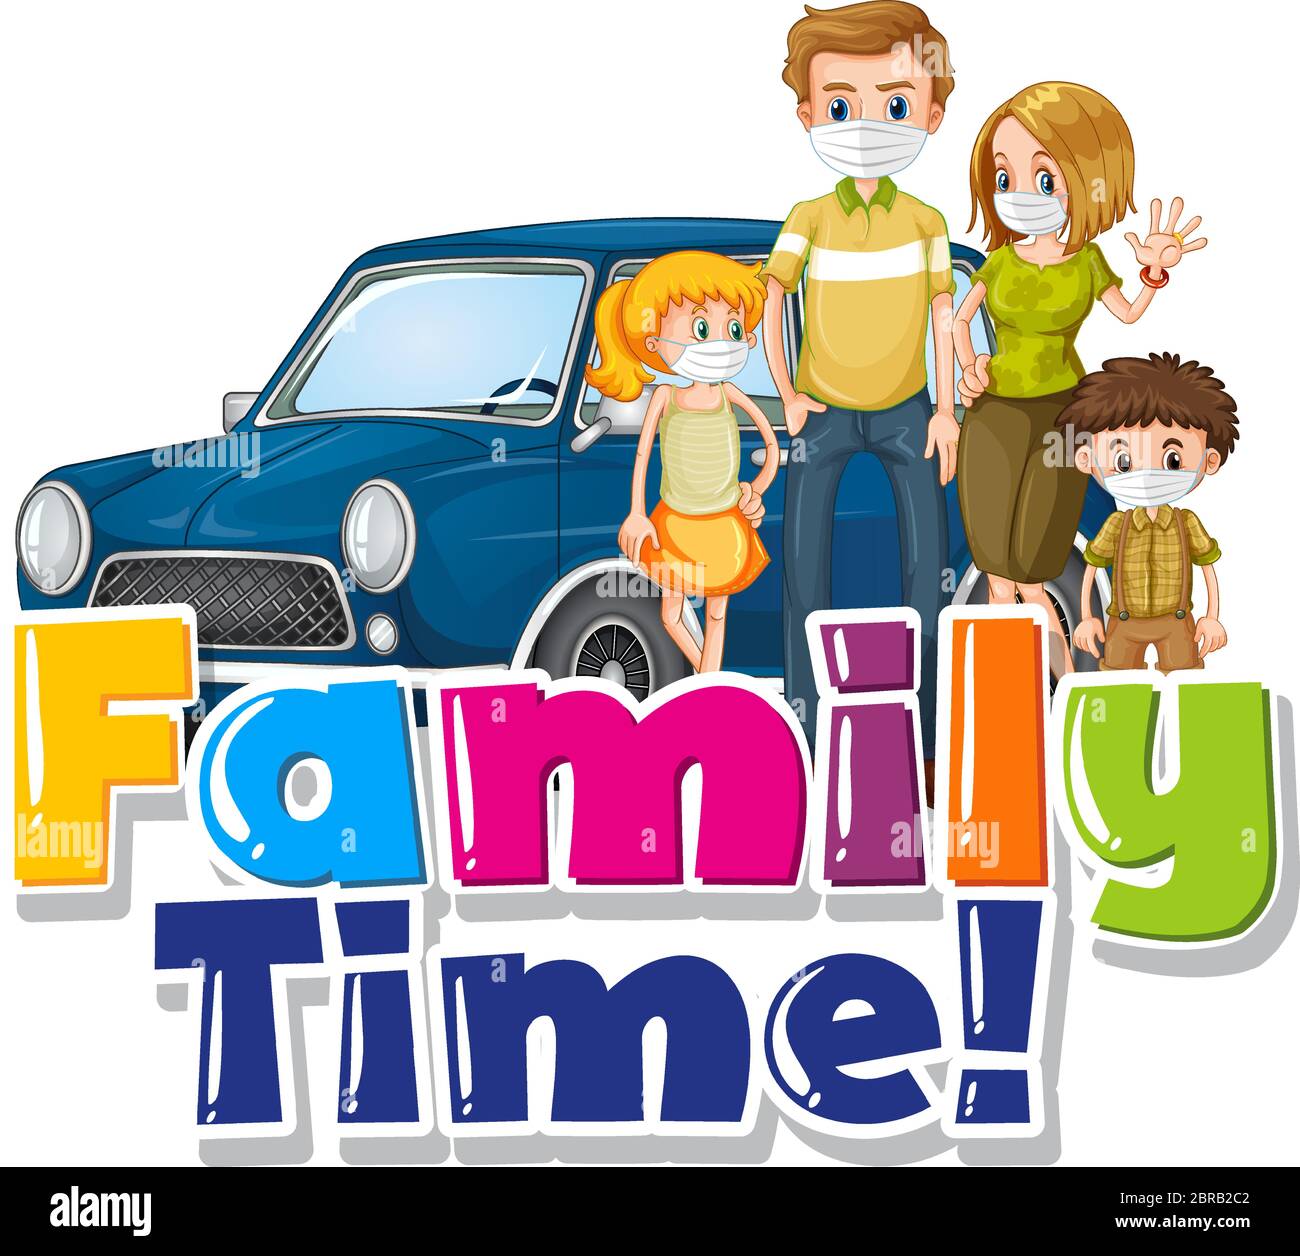 Familie Zeit Wort Zeichen mit Familie auf weißem Hintergrund Illustration Stock Vektor